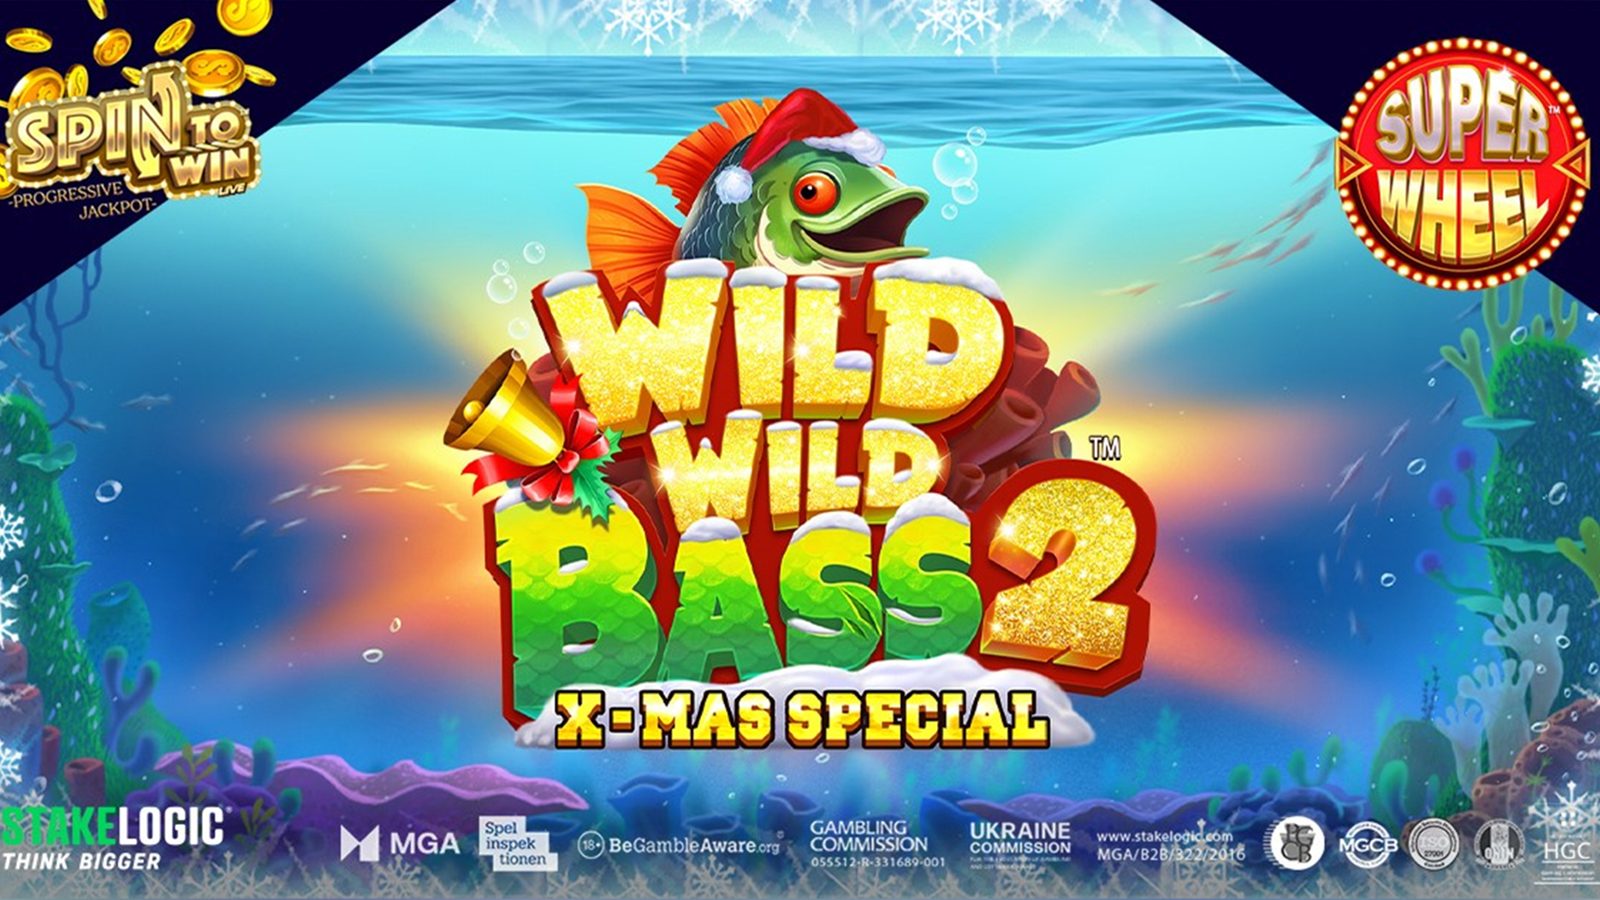 Stakelogic’s Wild Wild Bass 2 Xmas Special